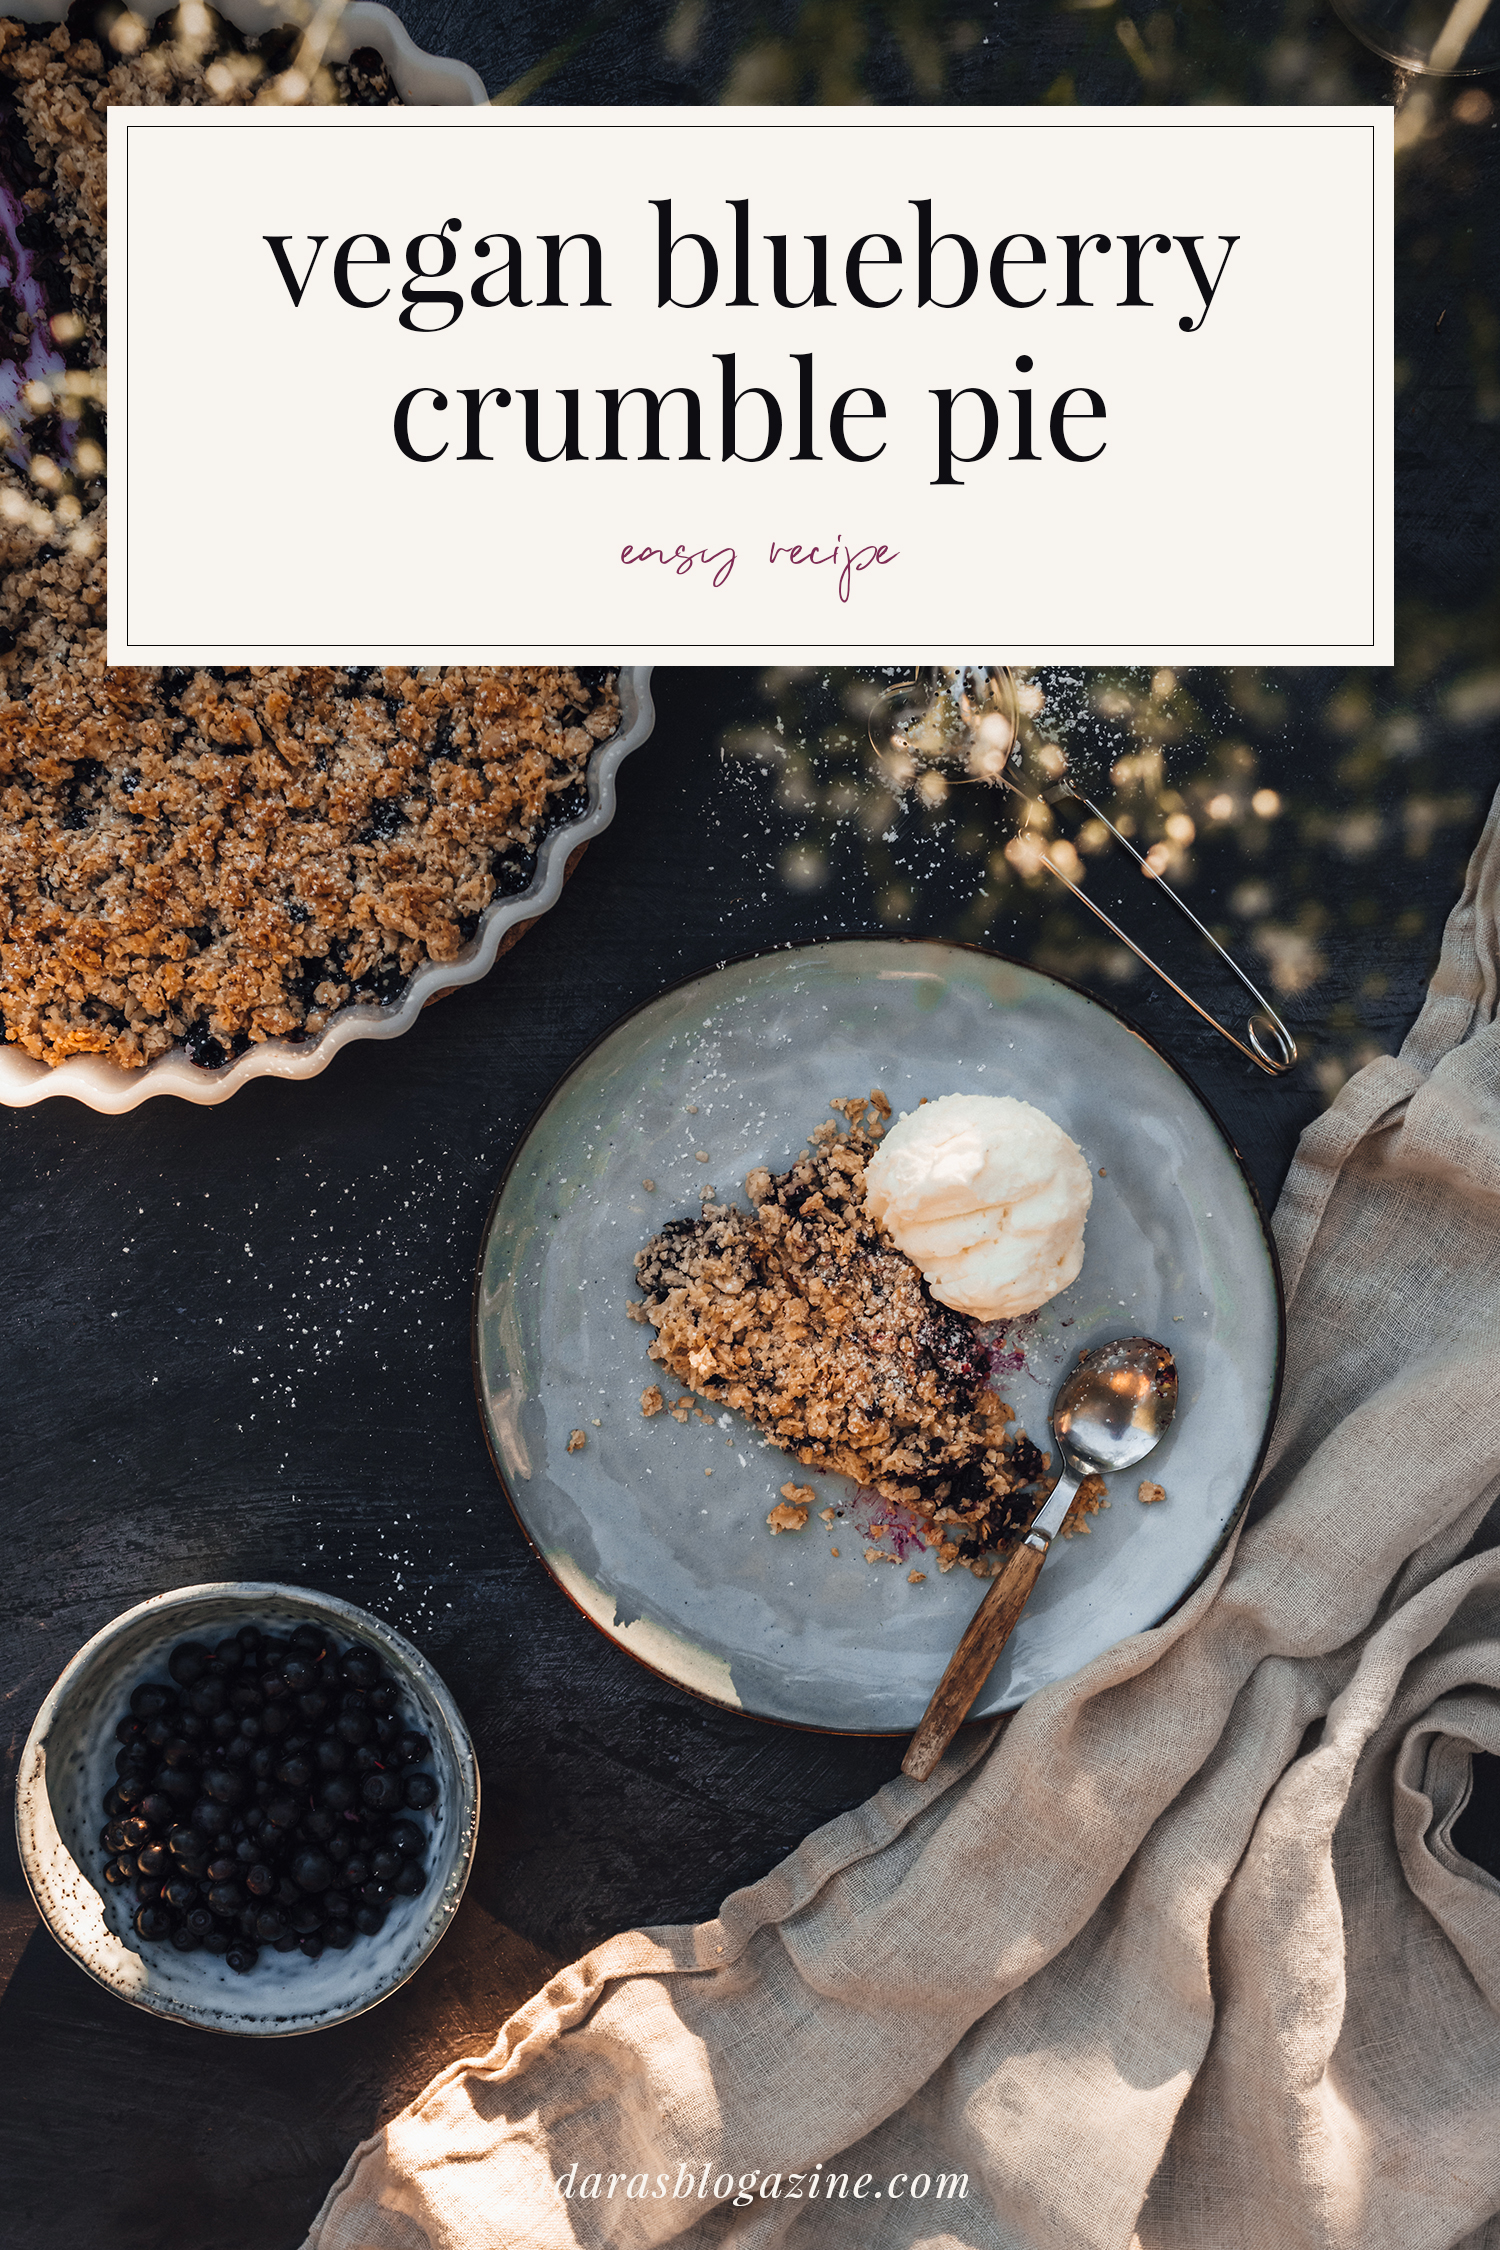 Swedish Blueberry Crumble Pie - Easy Vegan Recipe